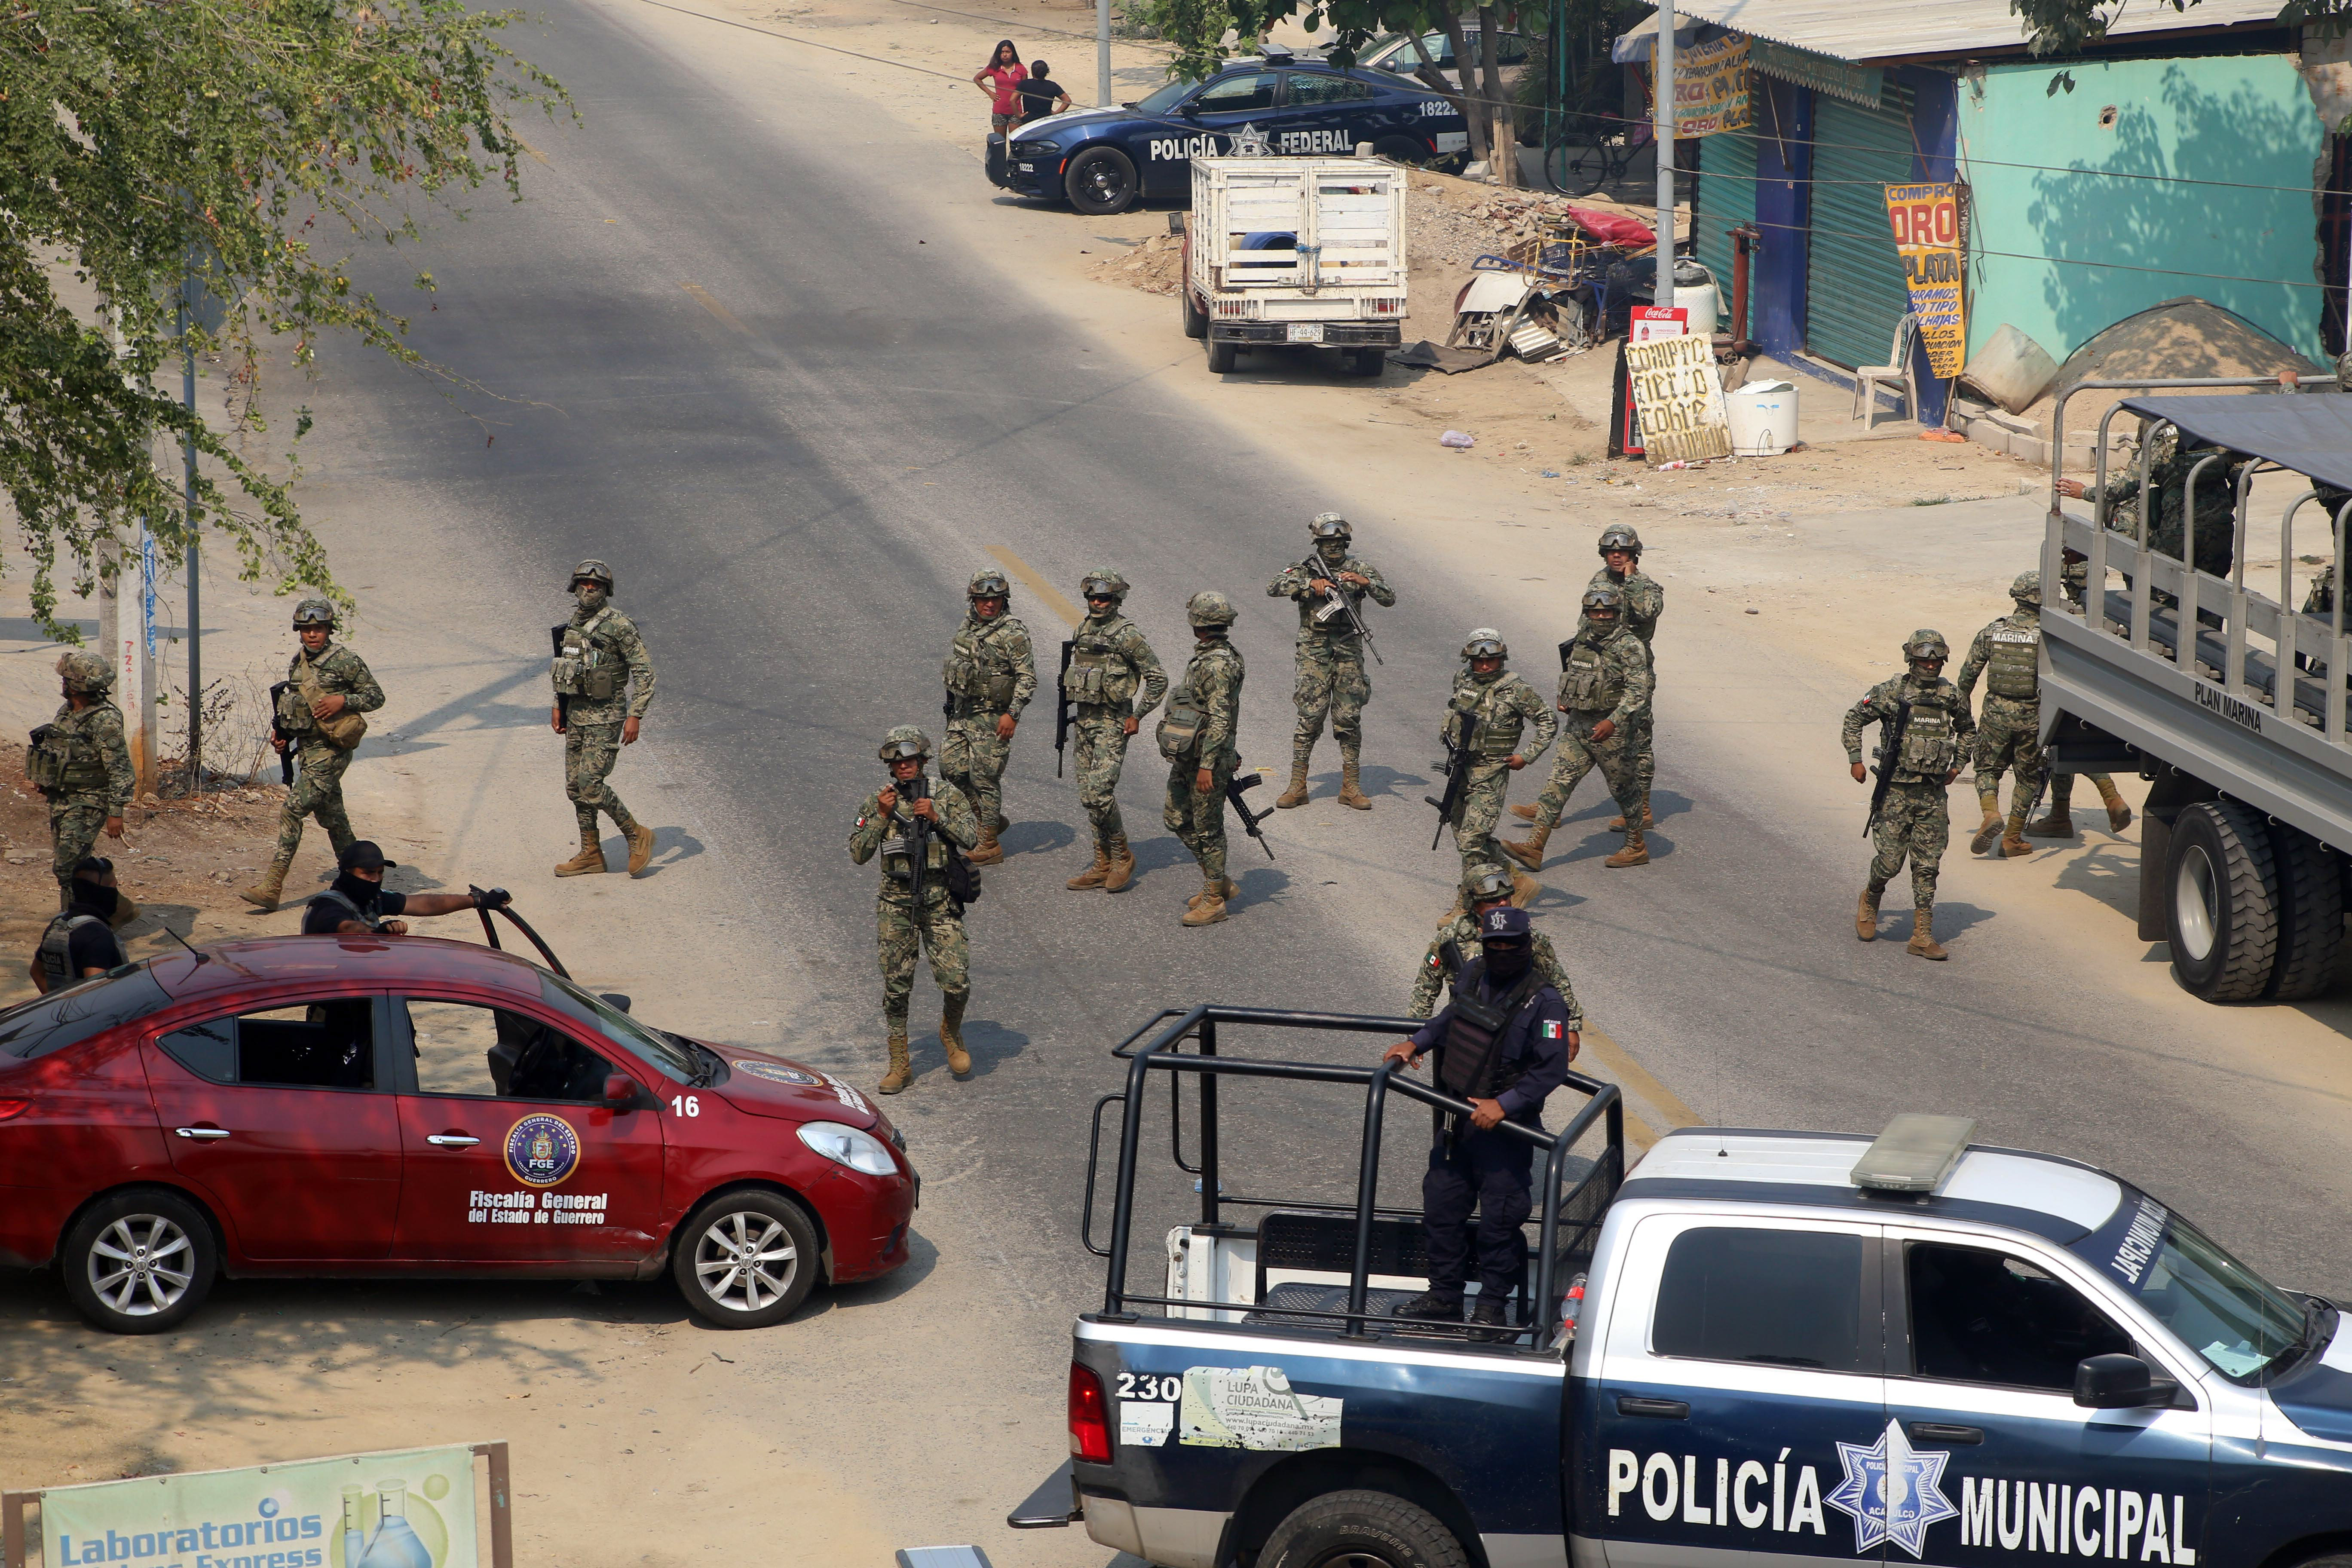 POLICIA - Policía comunitaria alista bloqueo contra Ejército en Guerrero CRKO5VUXK5BEXLHFJRUWKUM75Q